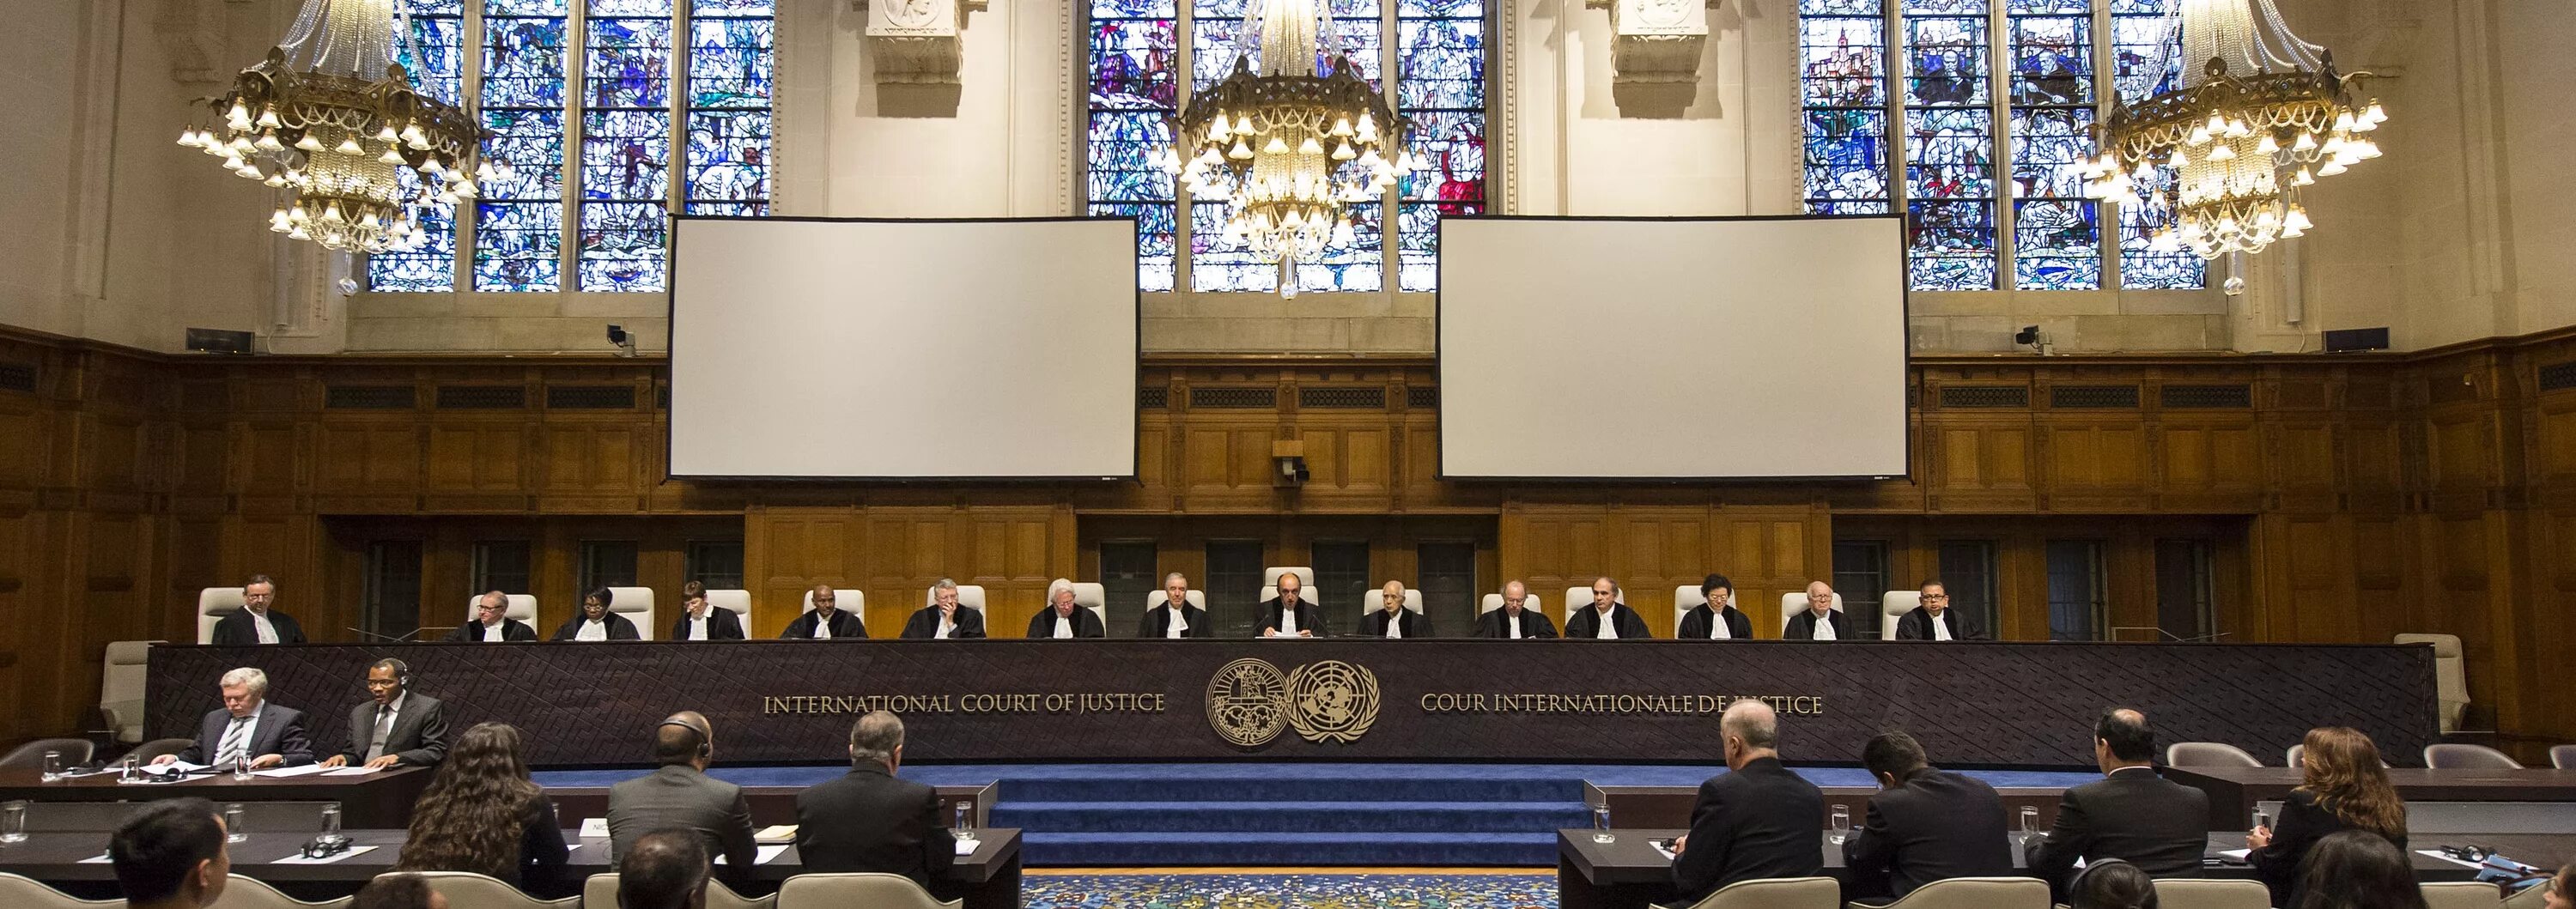 Генеральный суд оон. Международный суд в Гааге. Международный Уголовный трибунал (Гаага). Международный суд ООН статут. Здание международного суда ООН В Гааге.